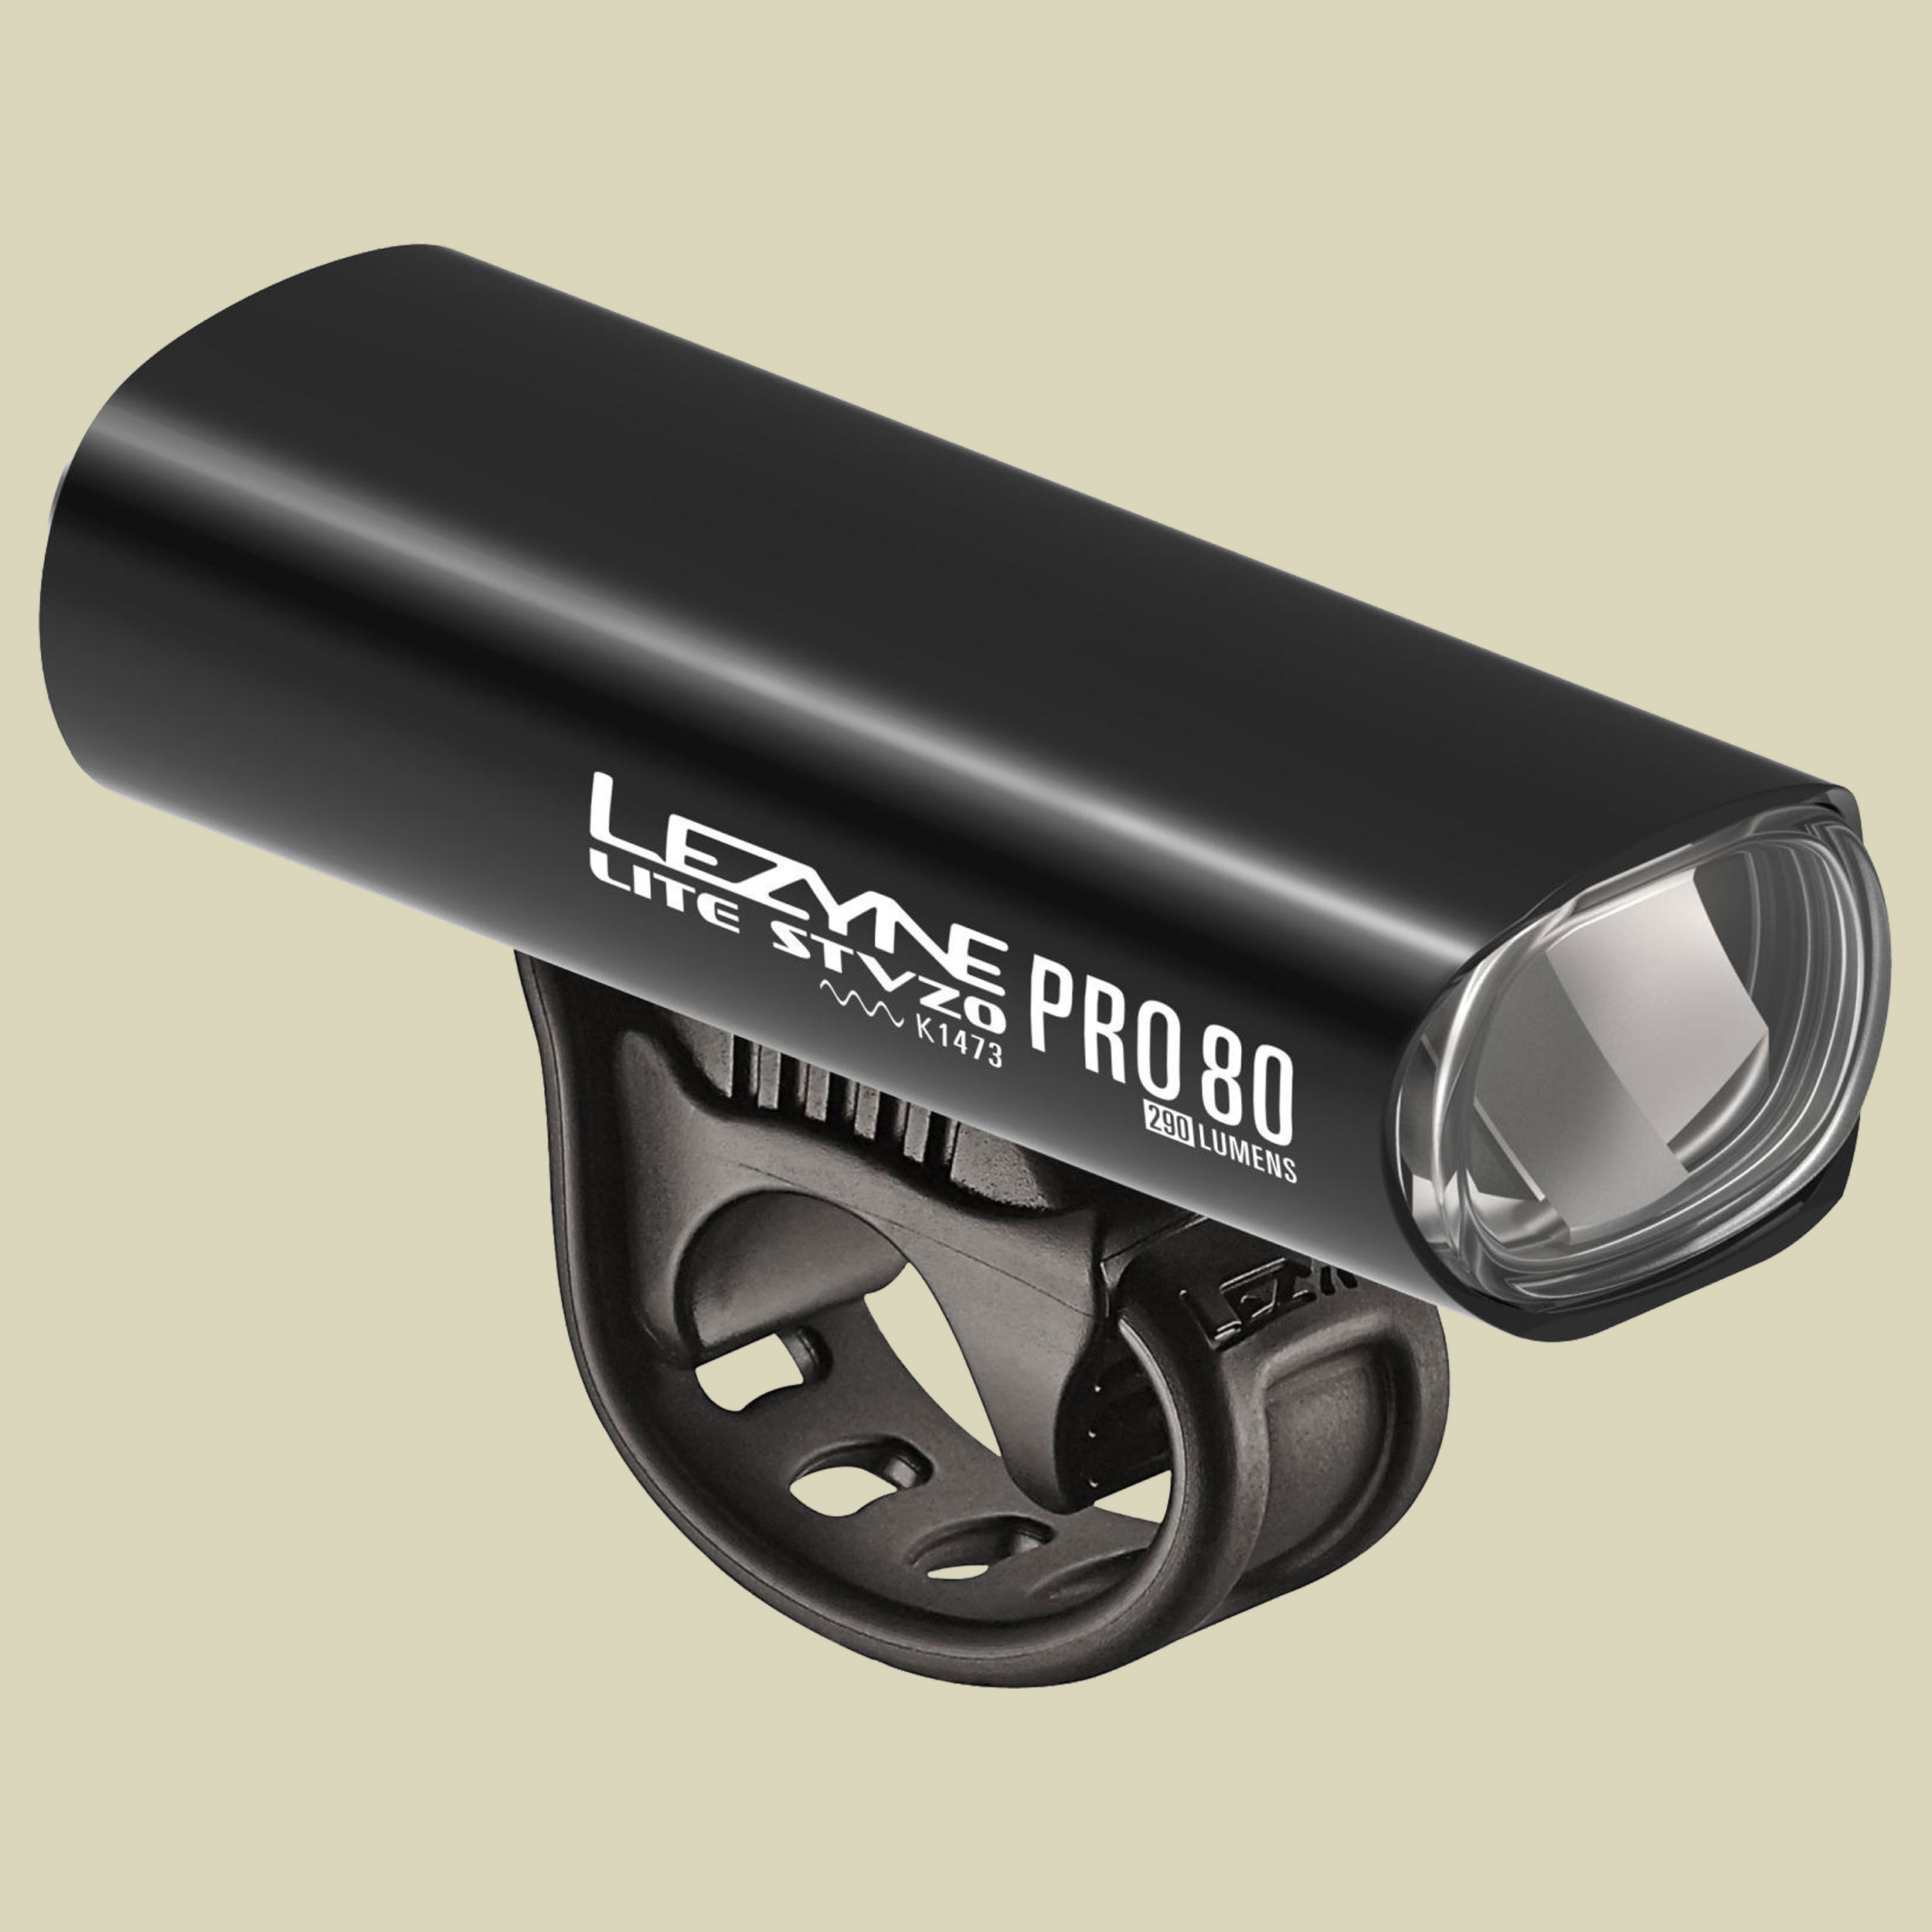 Lite Drive Pro 80 Farbe schwarz-glänzend